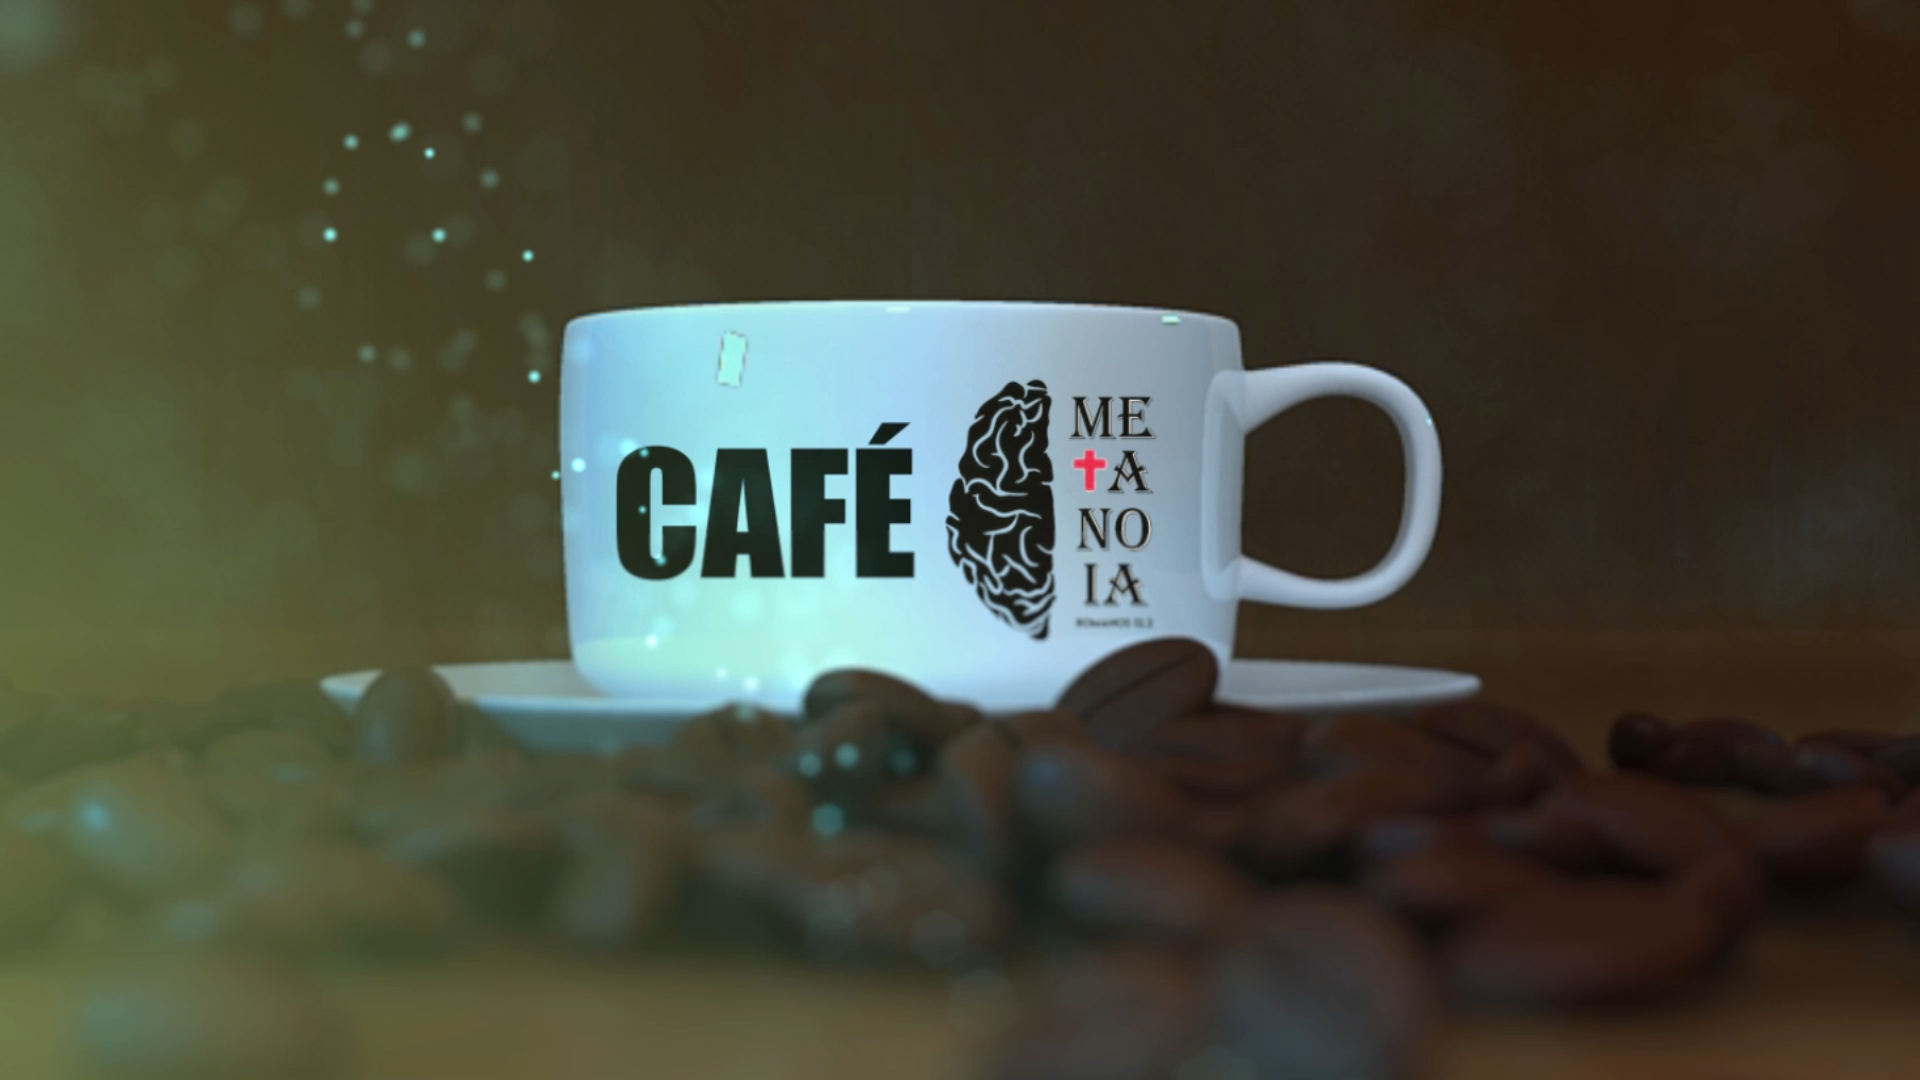 Programa café metanoia: Apresentação neilson santos